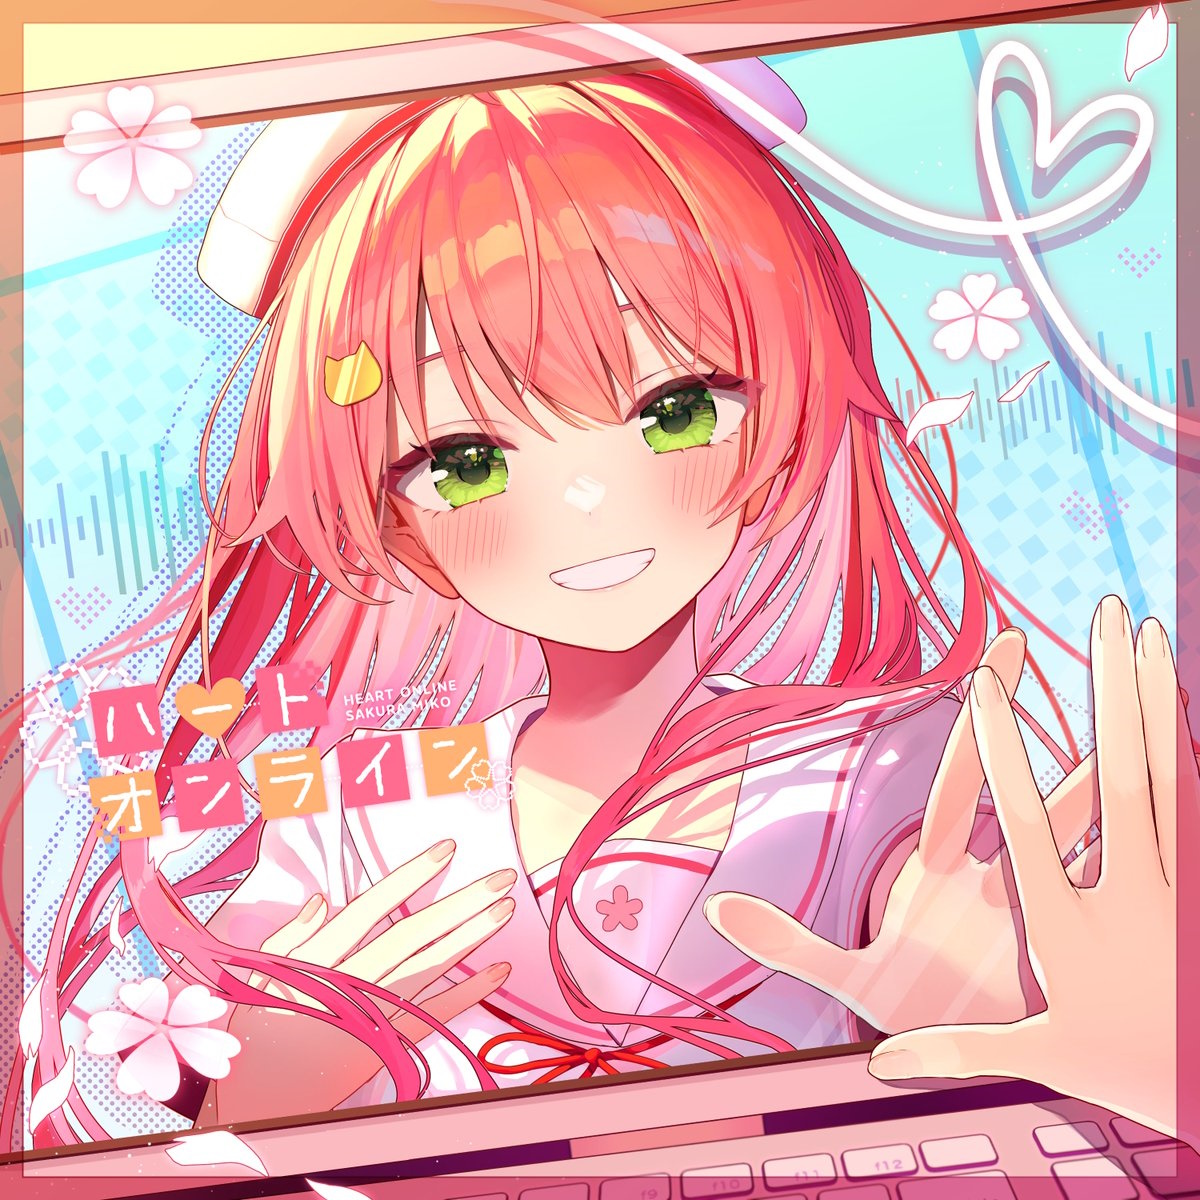 Cover art for『Sakura Miko - Heart Online』from the release『Heart Online』